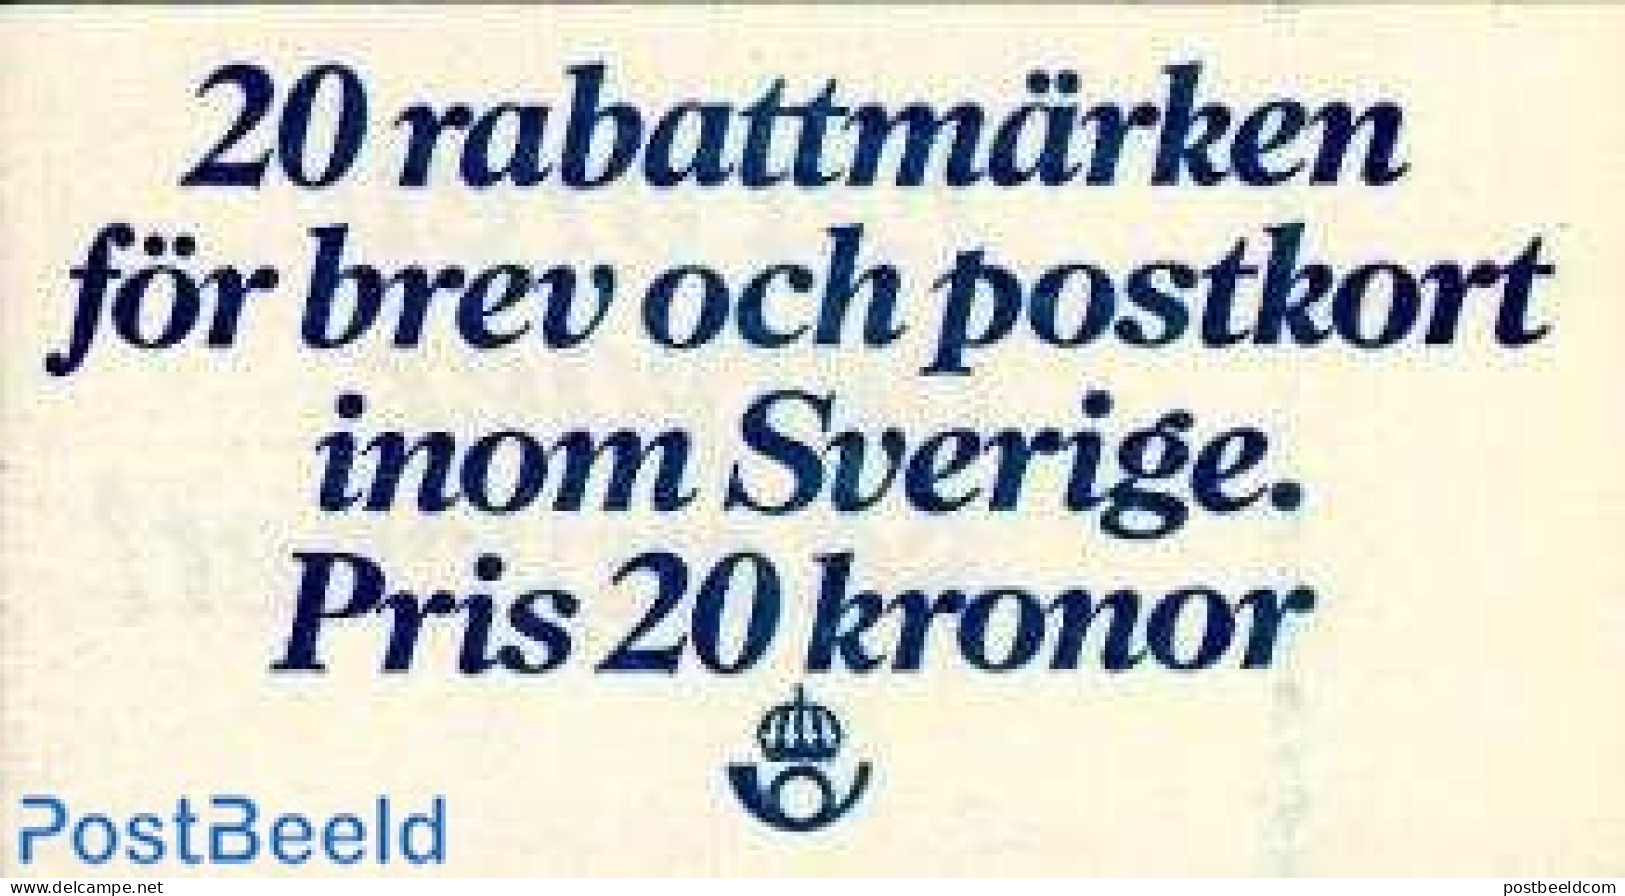 Sweden 1979 Rabatt Stamps Booklet, Mint NH, Stamp Booklets - Ongebruikt